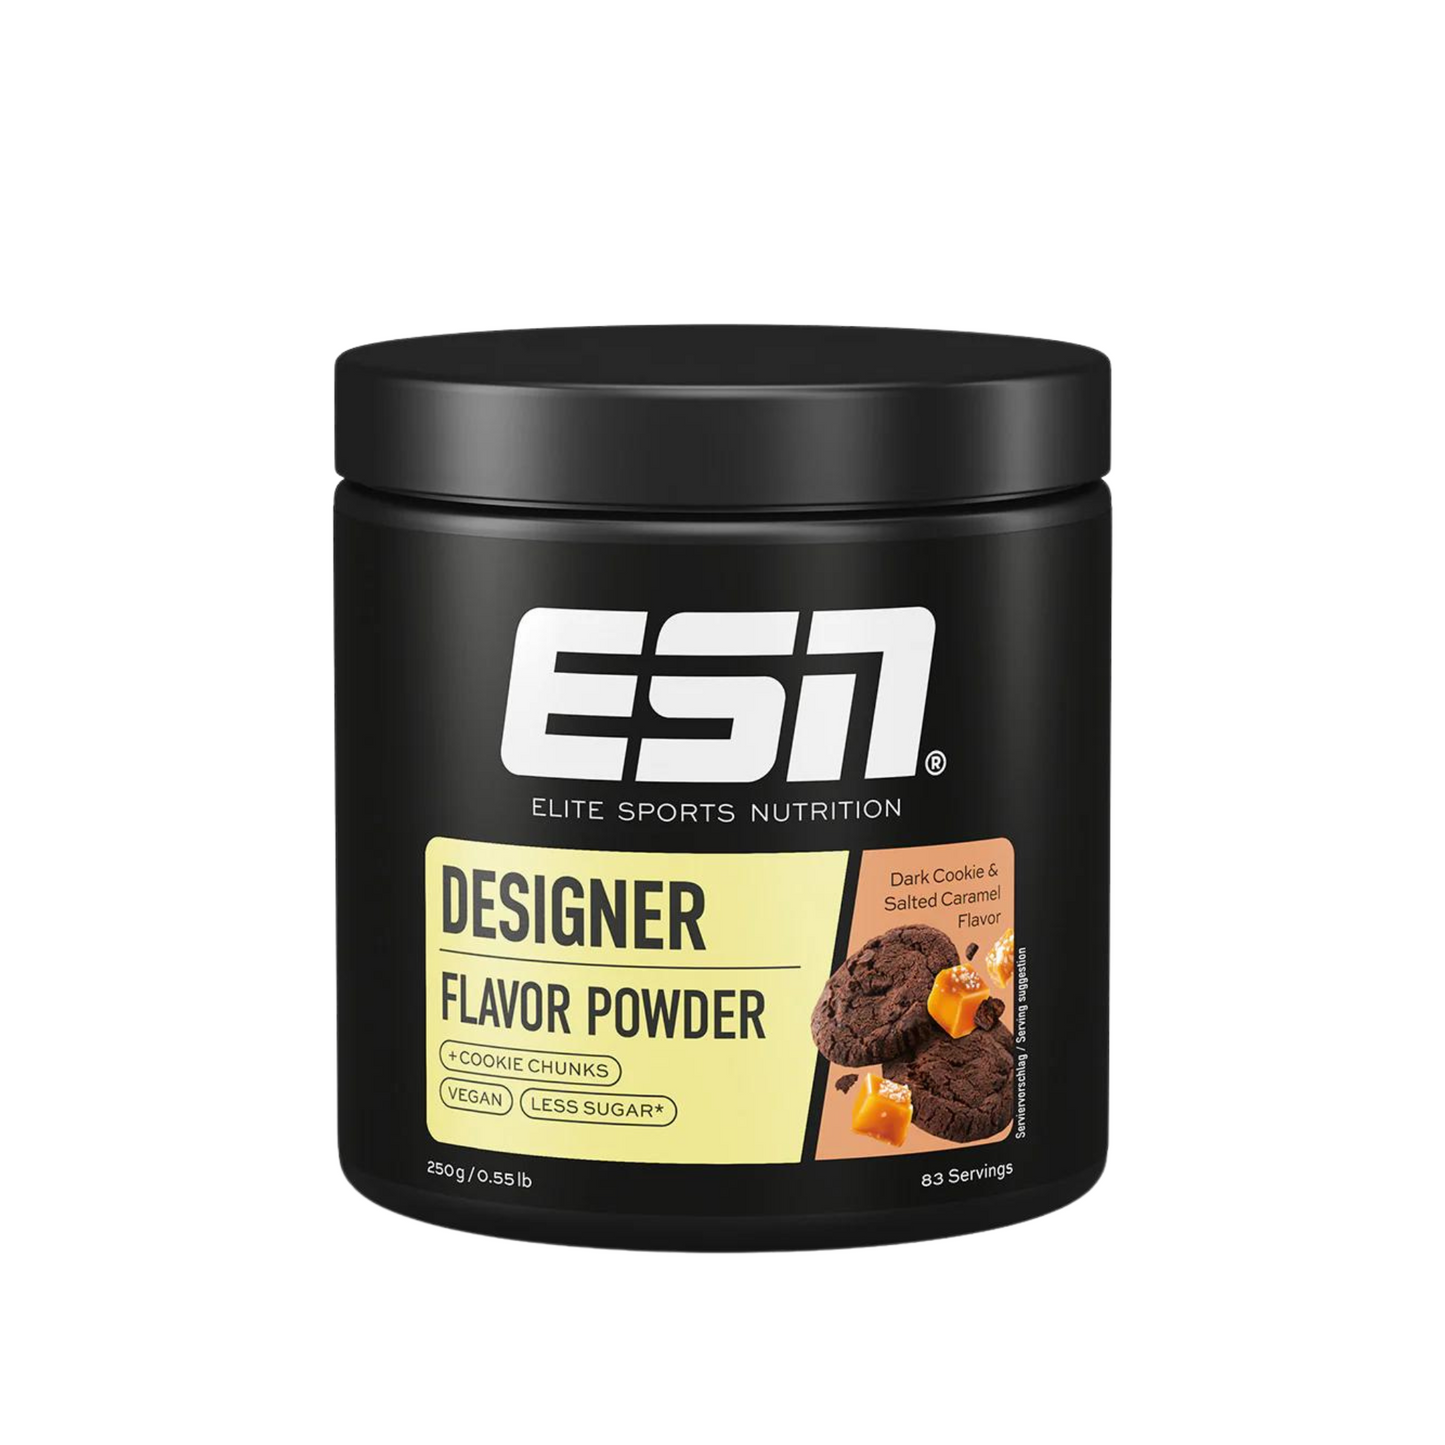 ESN Designer Flavor Powder 250g